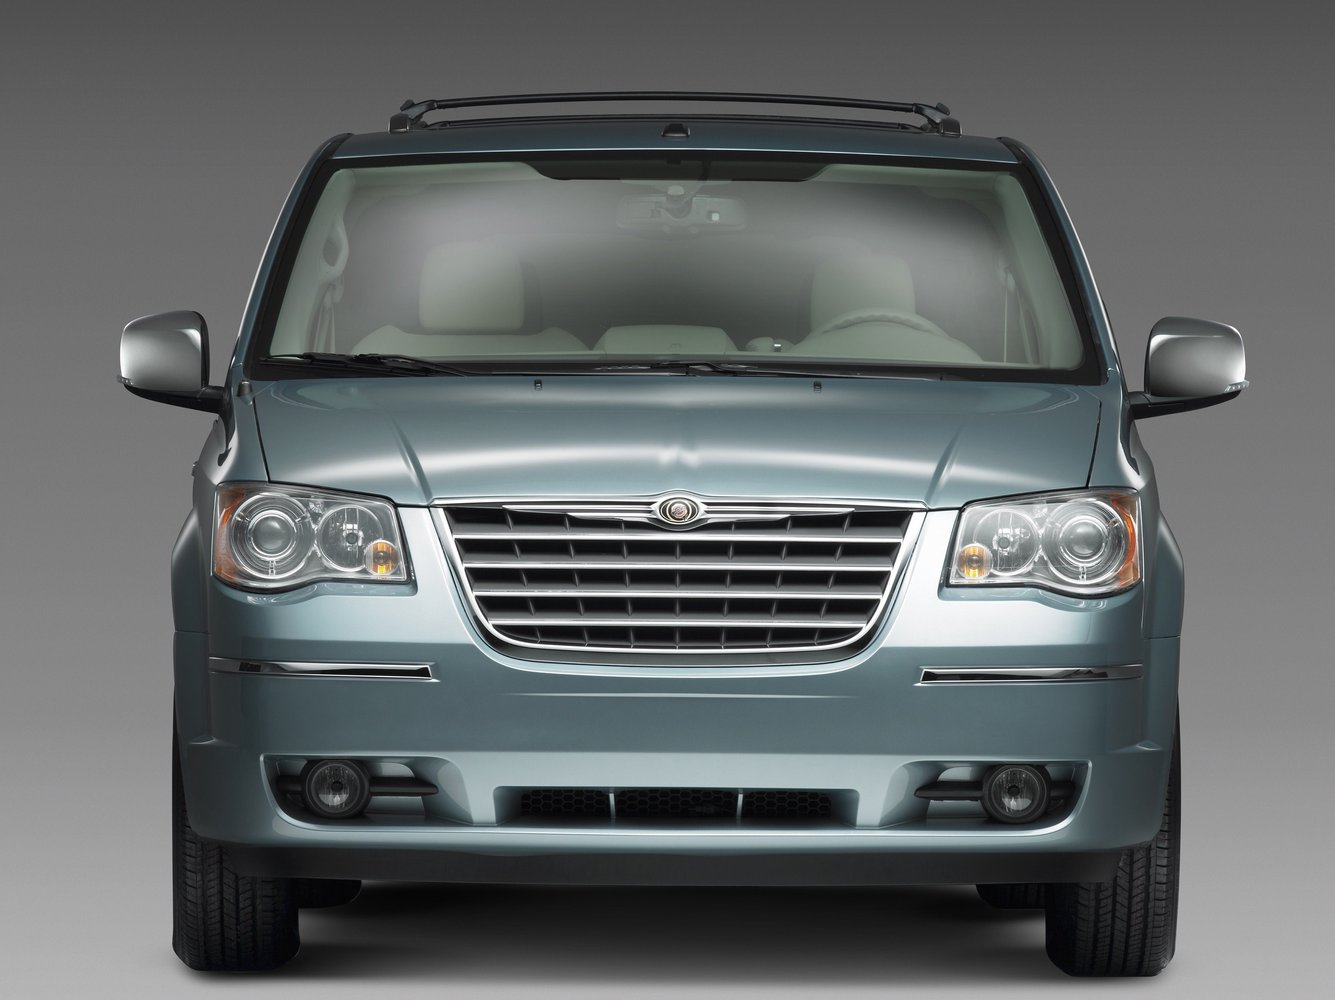 минивэн Chrysler Town & Country 2008 - 2010г выпуска модификация 3.3 AT (174 л.с.)